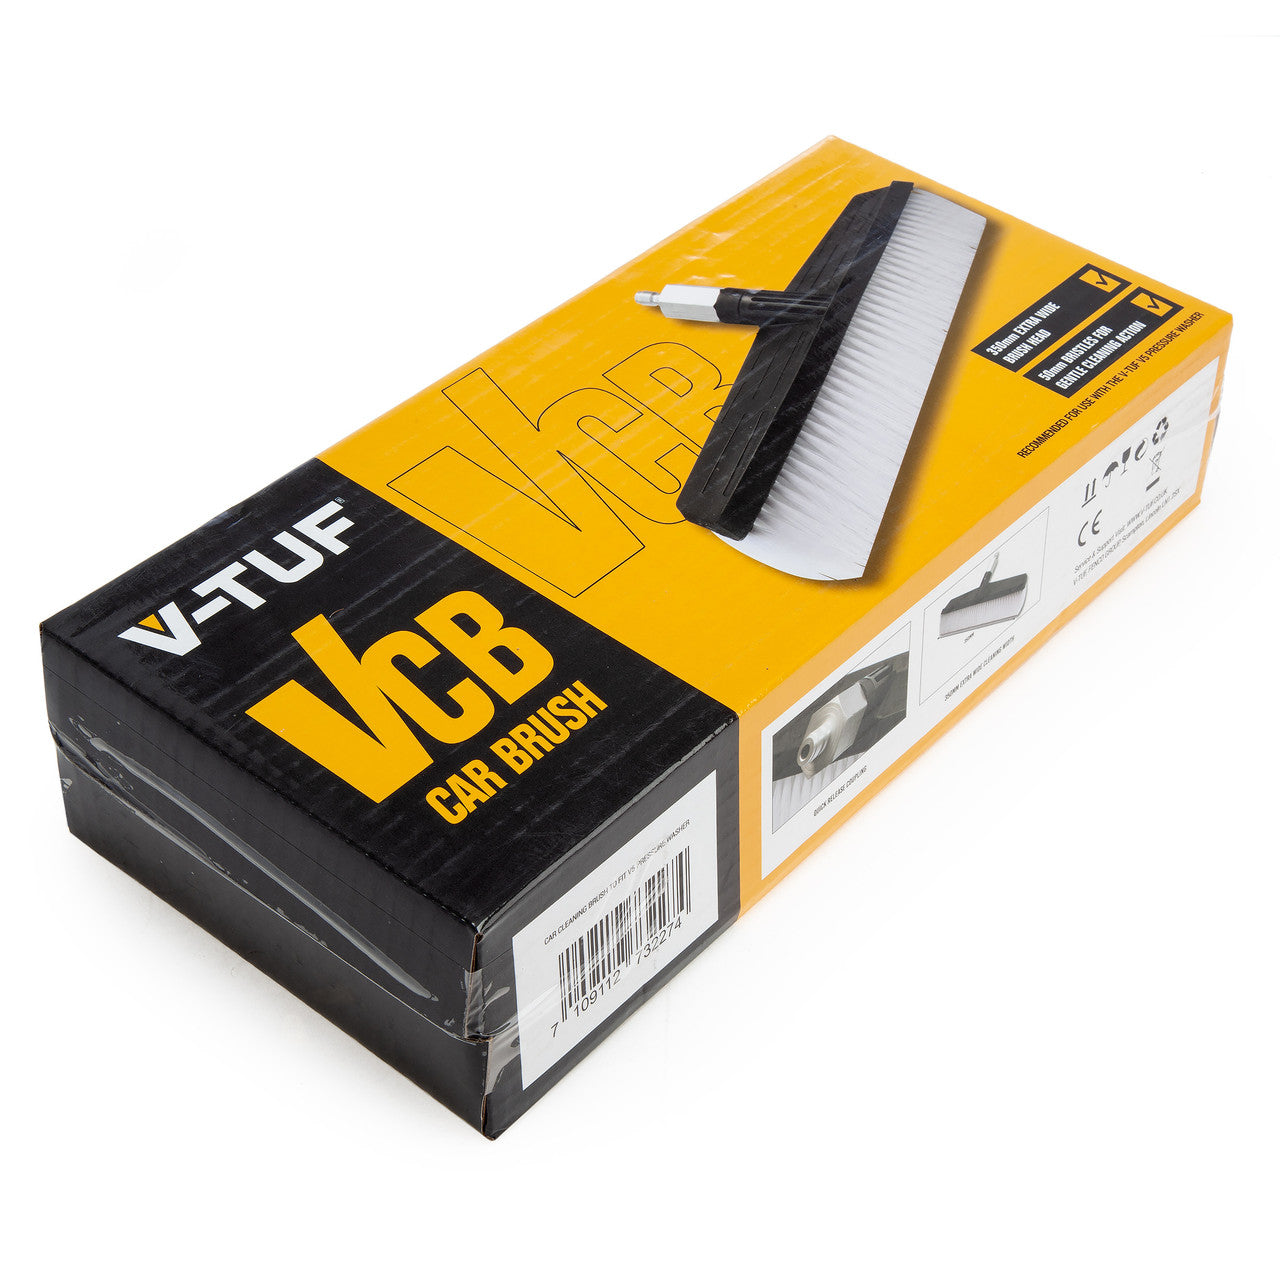 V-TUF VCB Car Wash Brush Attachment for V5 & V3 Pressure Washers